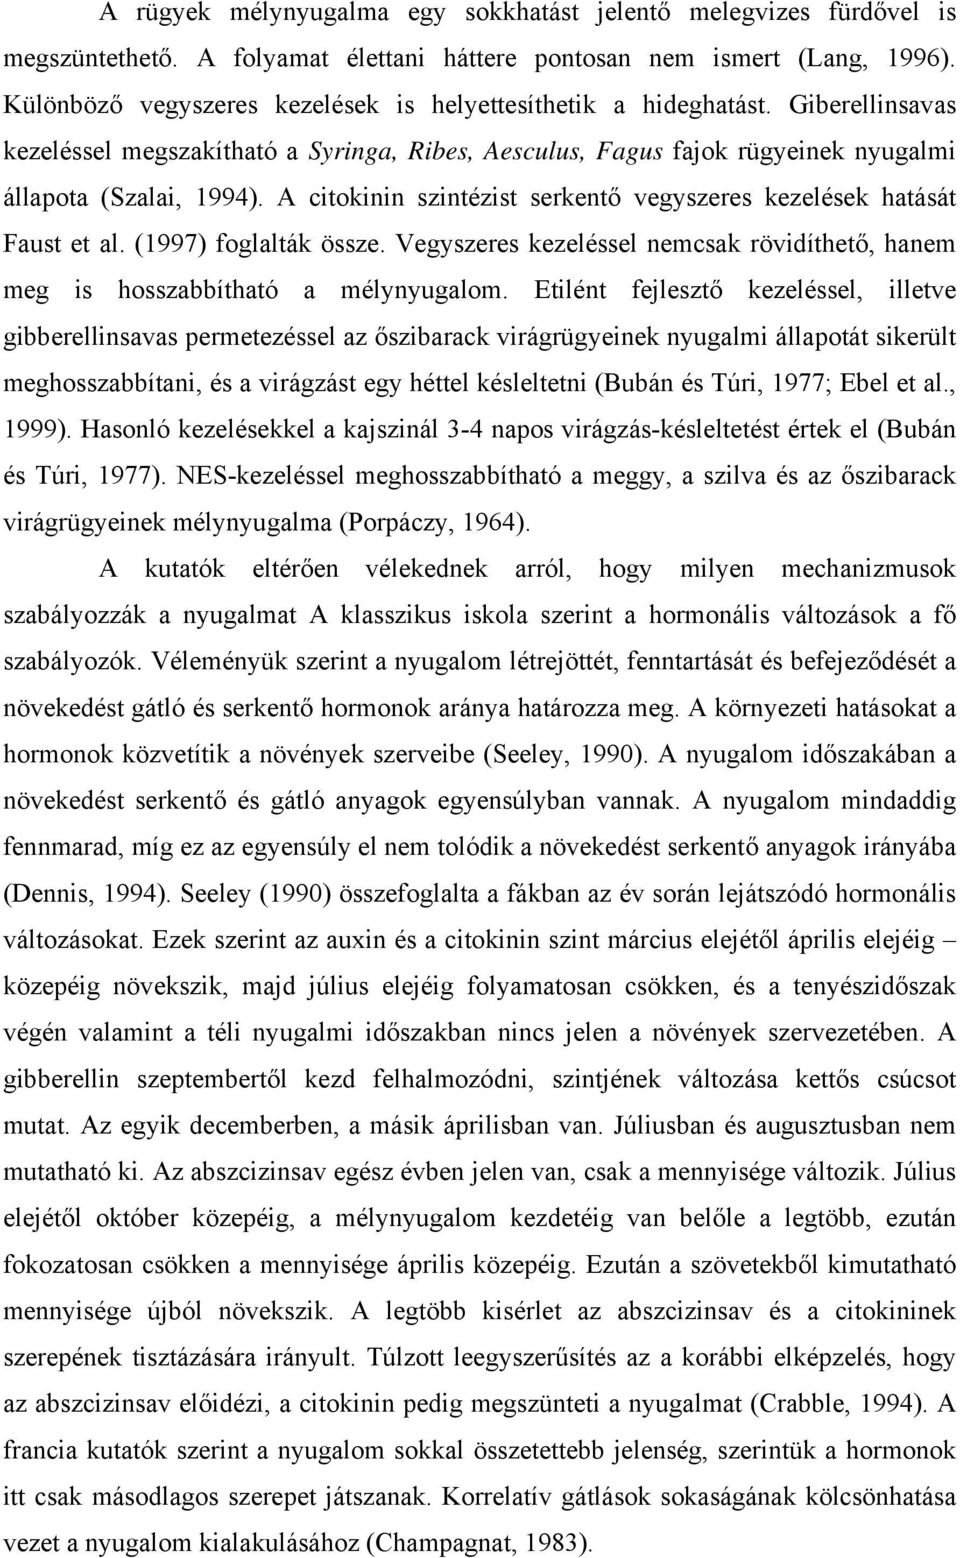 A citokinin szintézist serkentő vegyszeres kezelések hatását Faust et al. (1997) foglalták össze. Vegyszeres kezeléssel nemcsak rövidíthető, hanem meg is hosszabbítható a mélynyugalom.